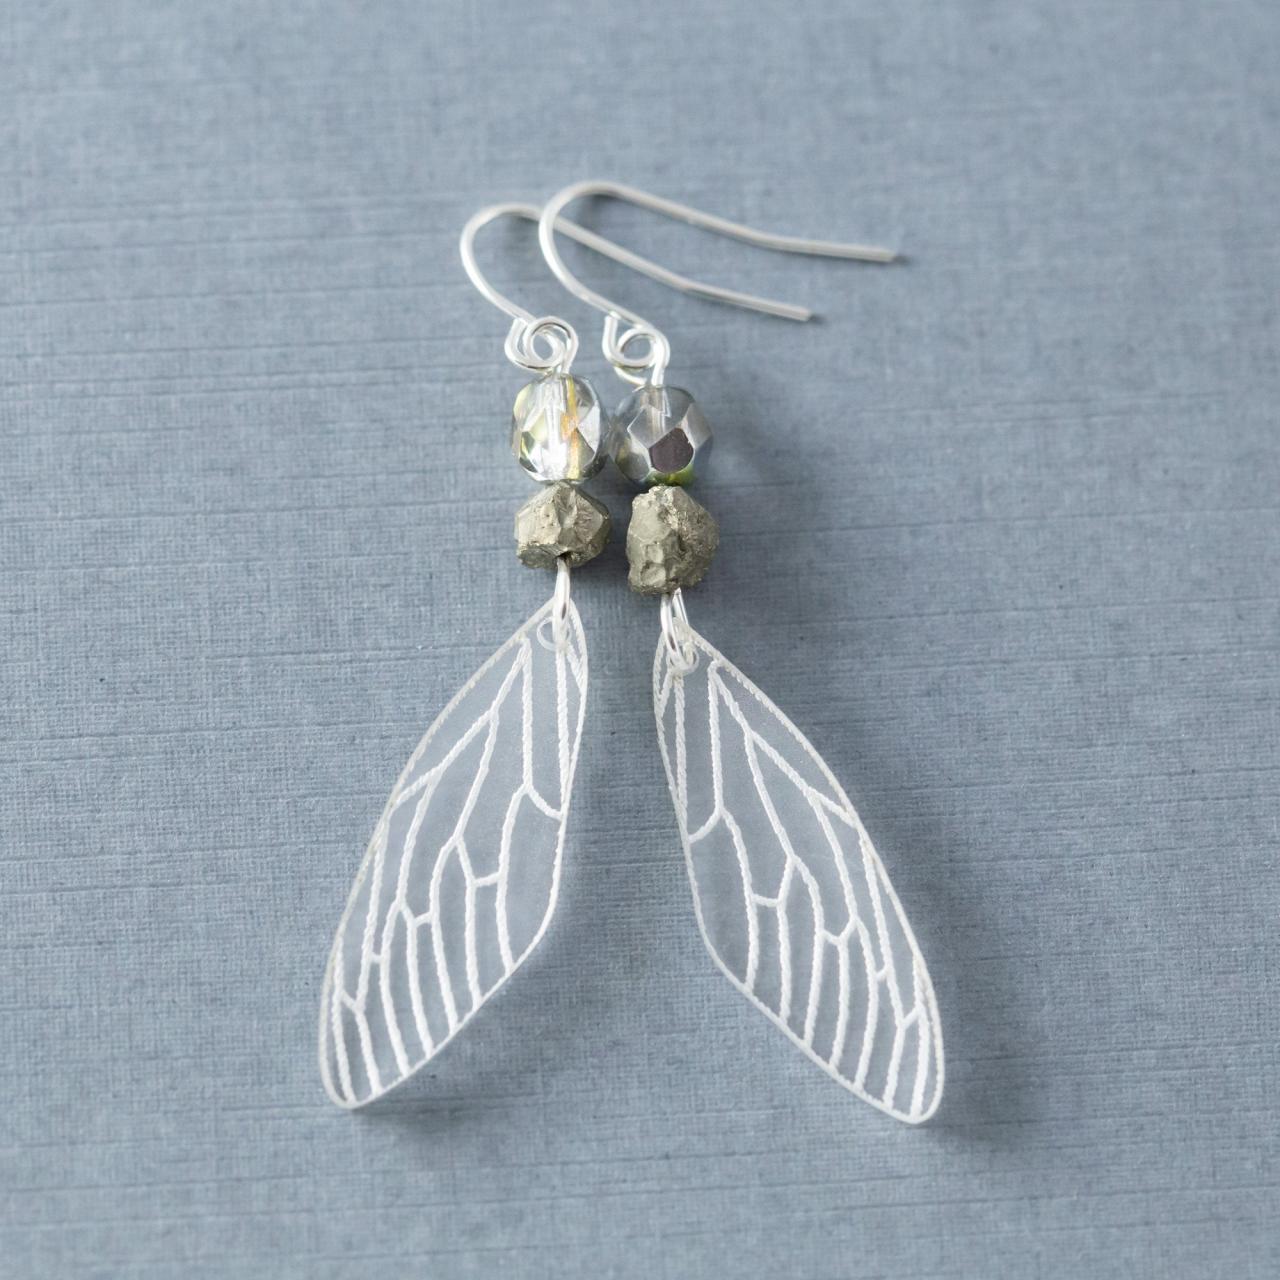 Fairy Wing Earrings, Cicada Wing Earrings, Pyrite Earrings, Cicada Earrings, Insect Wing Earrings, Acrylic Earrings, Nature Jewelry